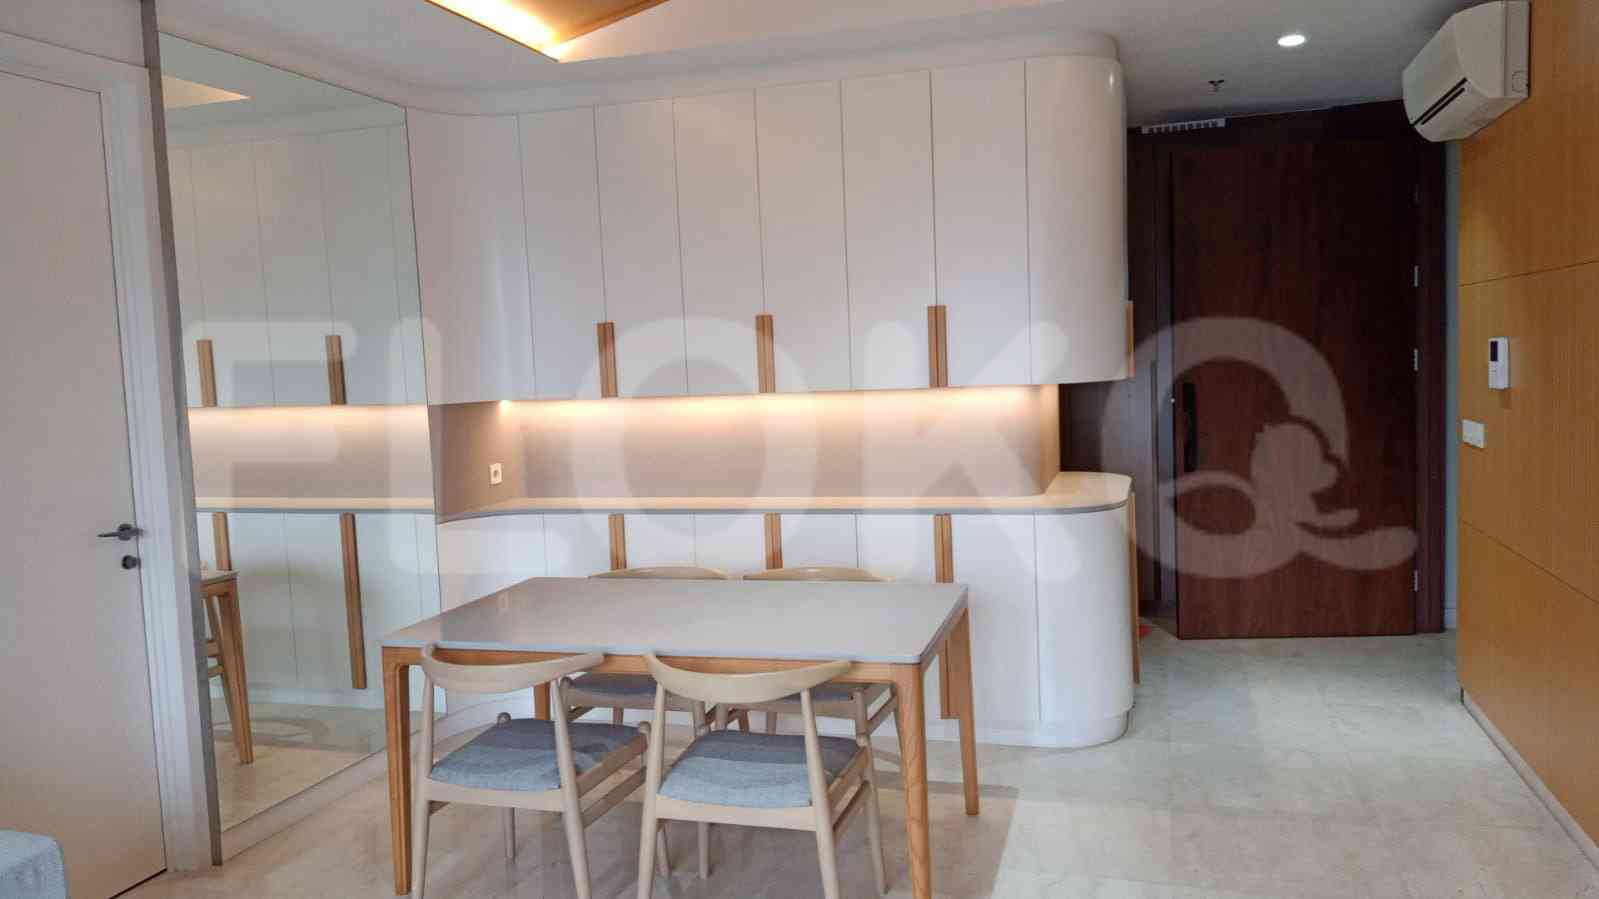 2 Bedroom on 12th Floor for Rent in Apartemen Branz Simatupang - ftbeee 3